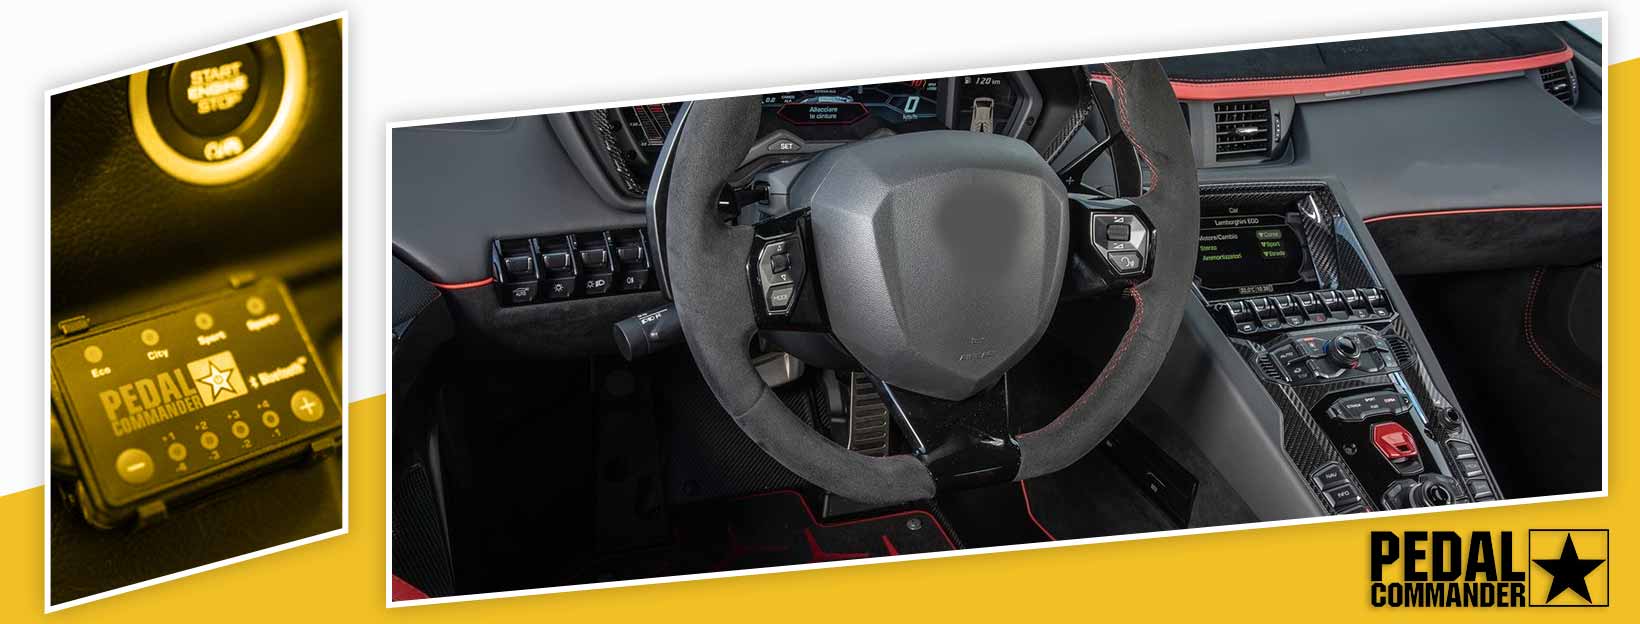 Pedal Commander for Lamborghini Aventador - interior